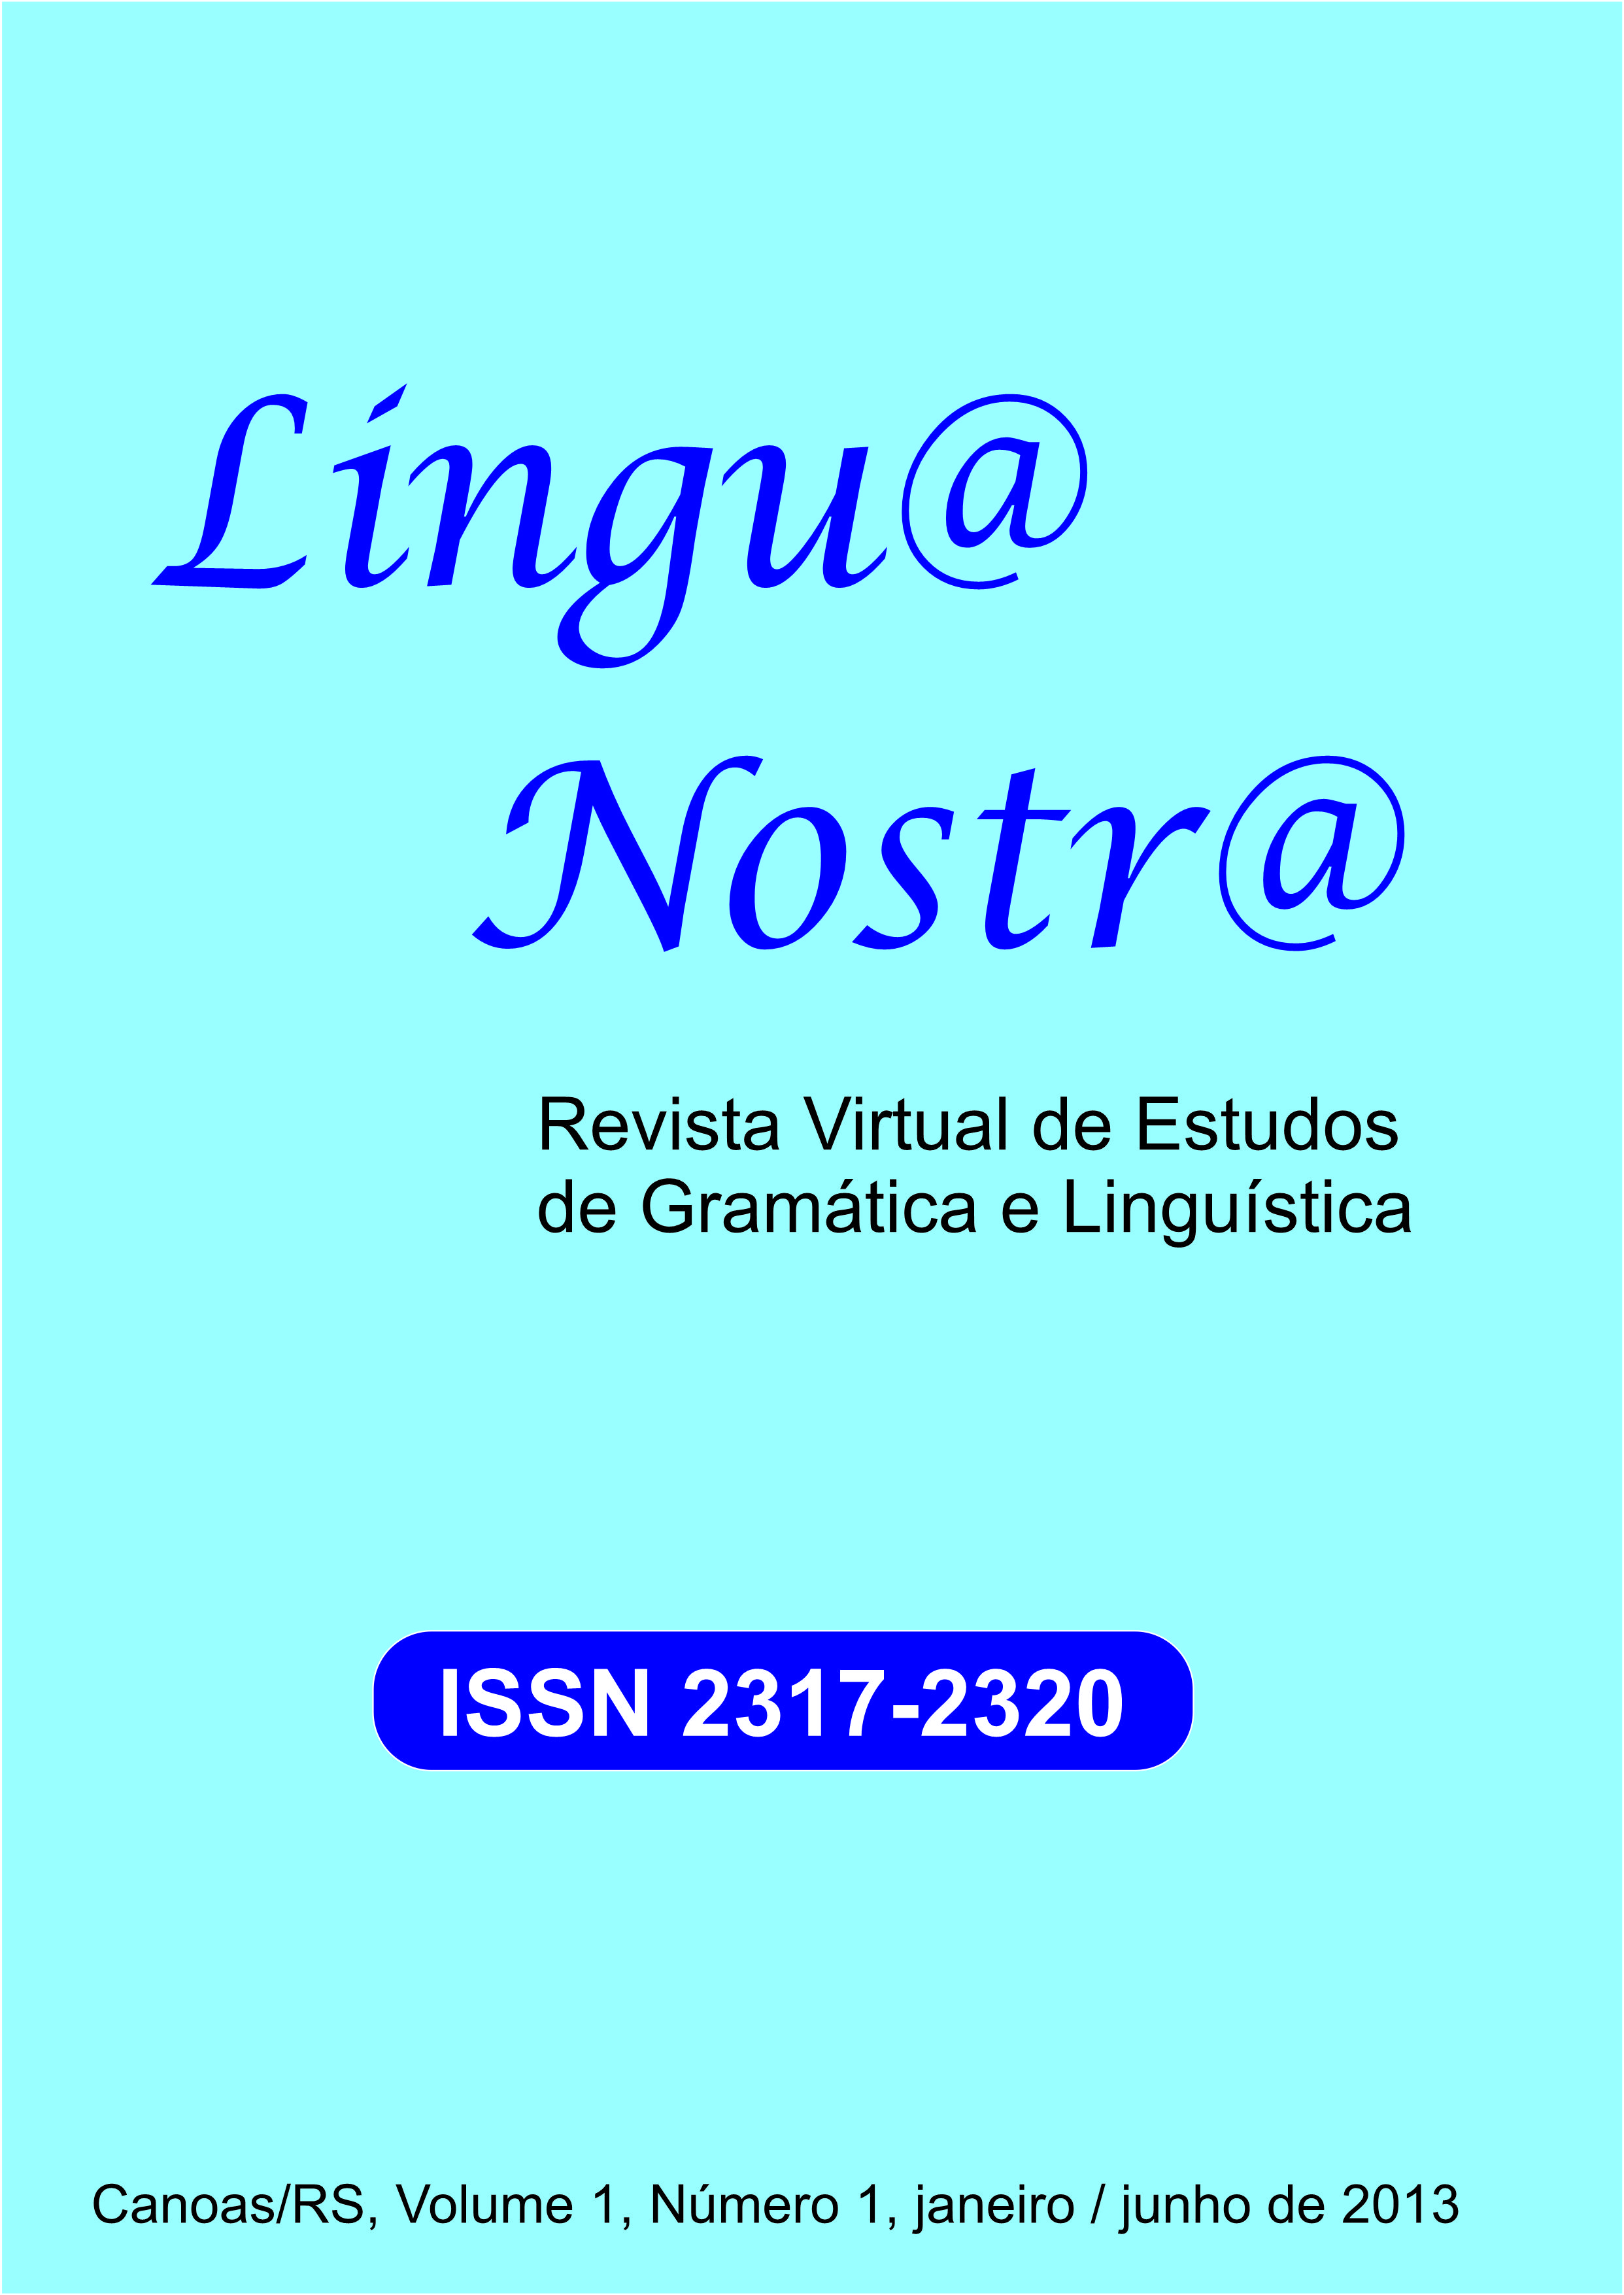 					Visualizar v. 1 n. 1 (2013): Primeira Edição da Revista Lingu@ Nostr@
				